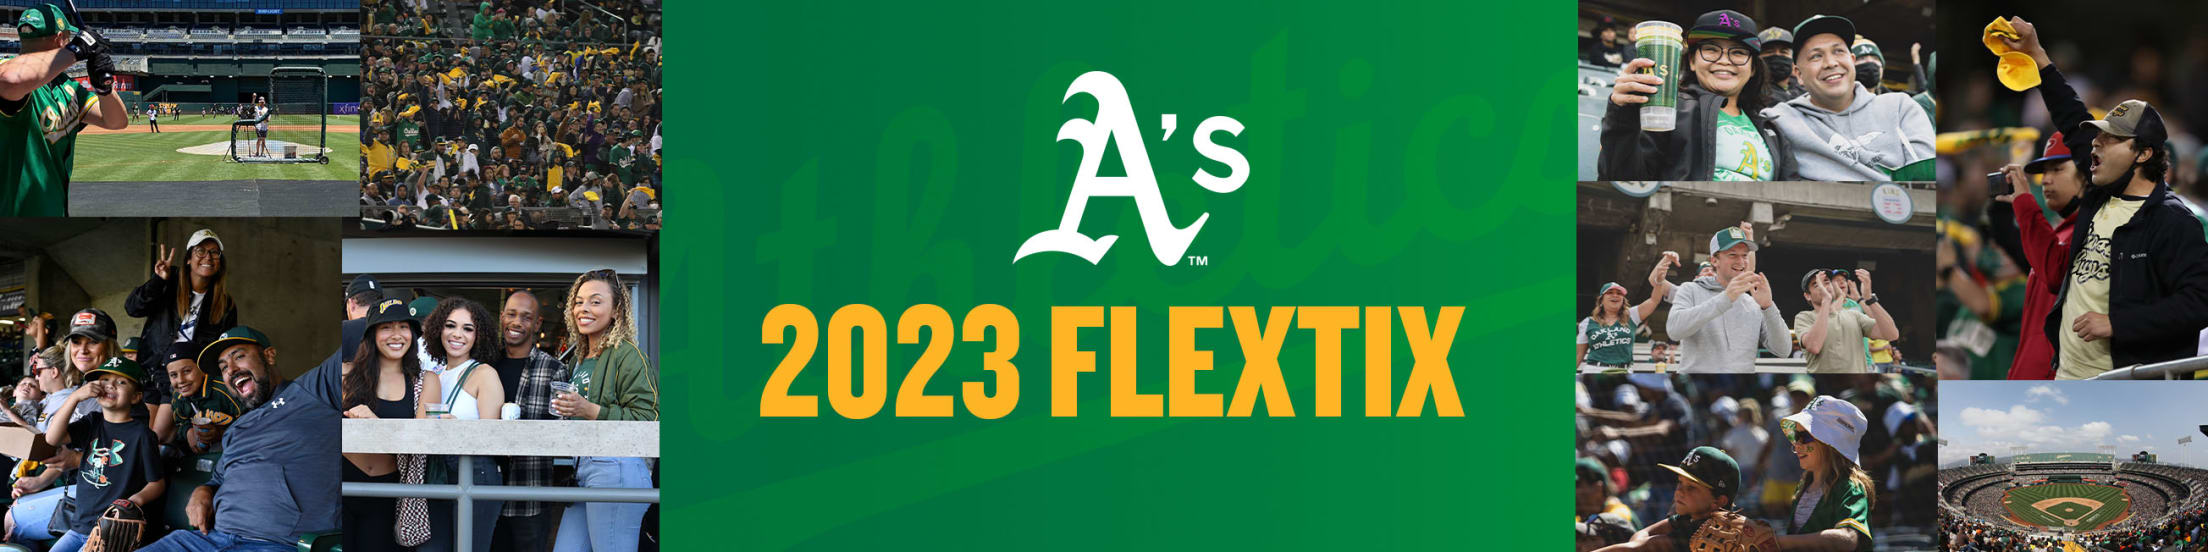 FlexTix  Oakland Athletics